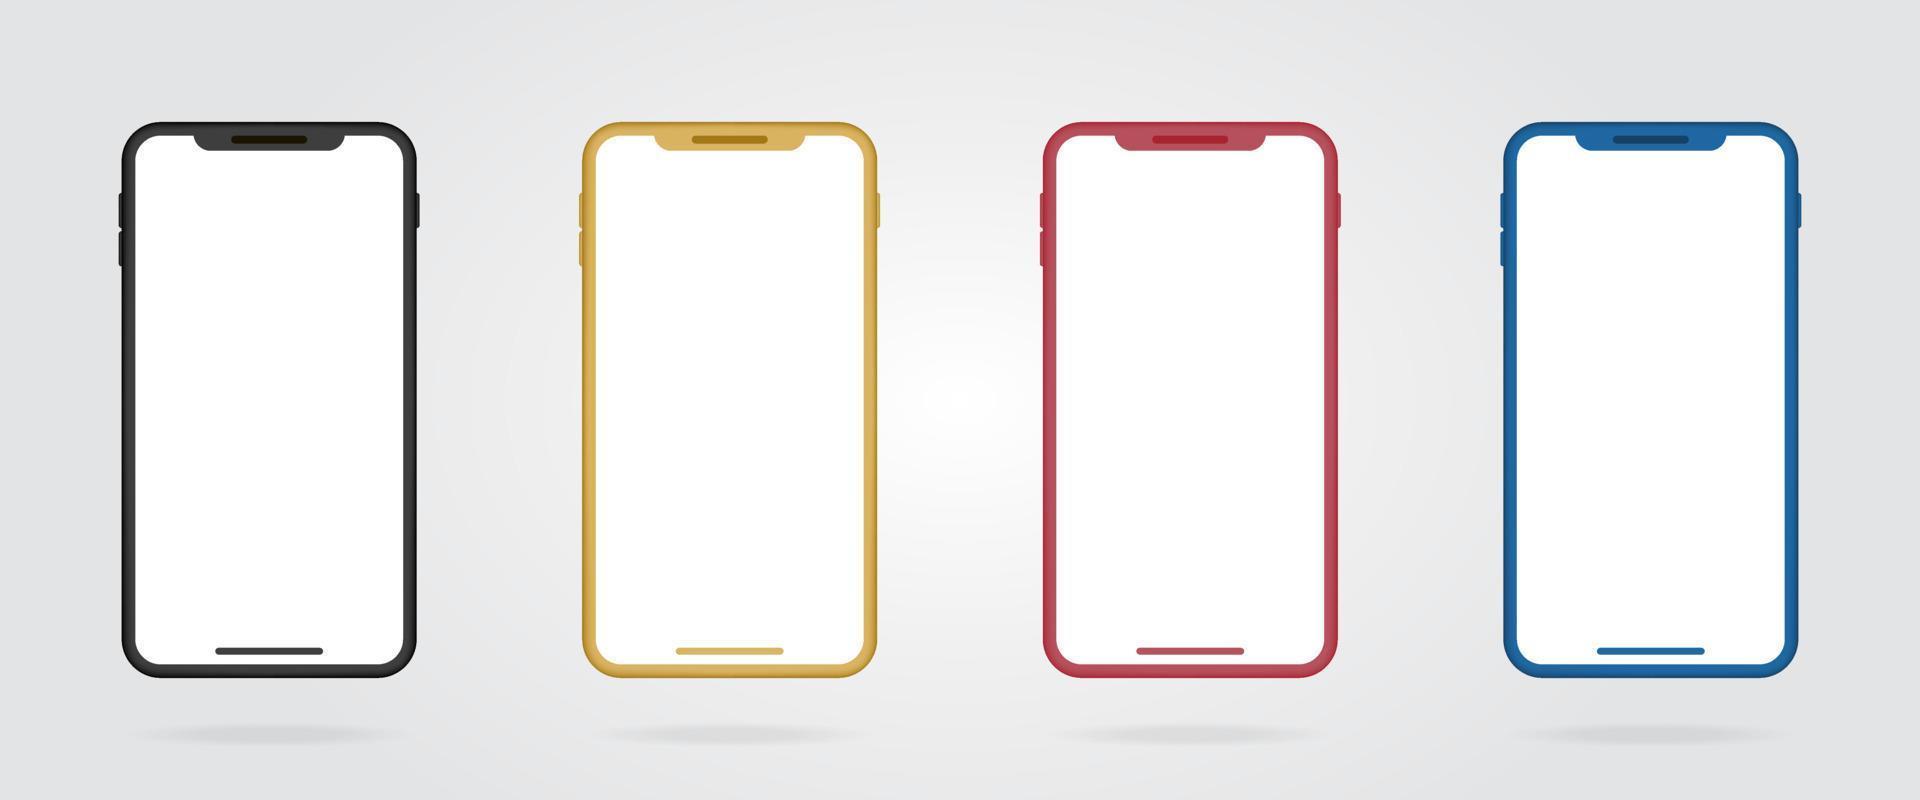 marcos de teléfonos inteligentes de colores realistas. teléfono móvil de maqueta negro, dorado, rojo y azul. conjunto de teléfonos móviles en color. vector